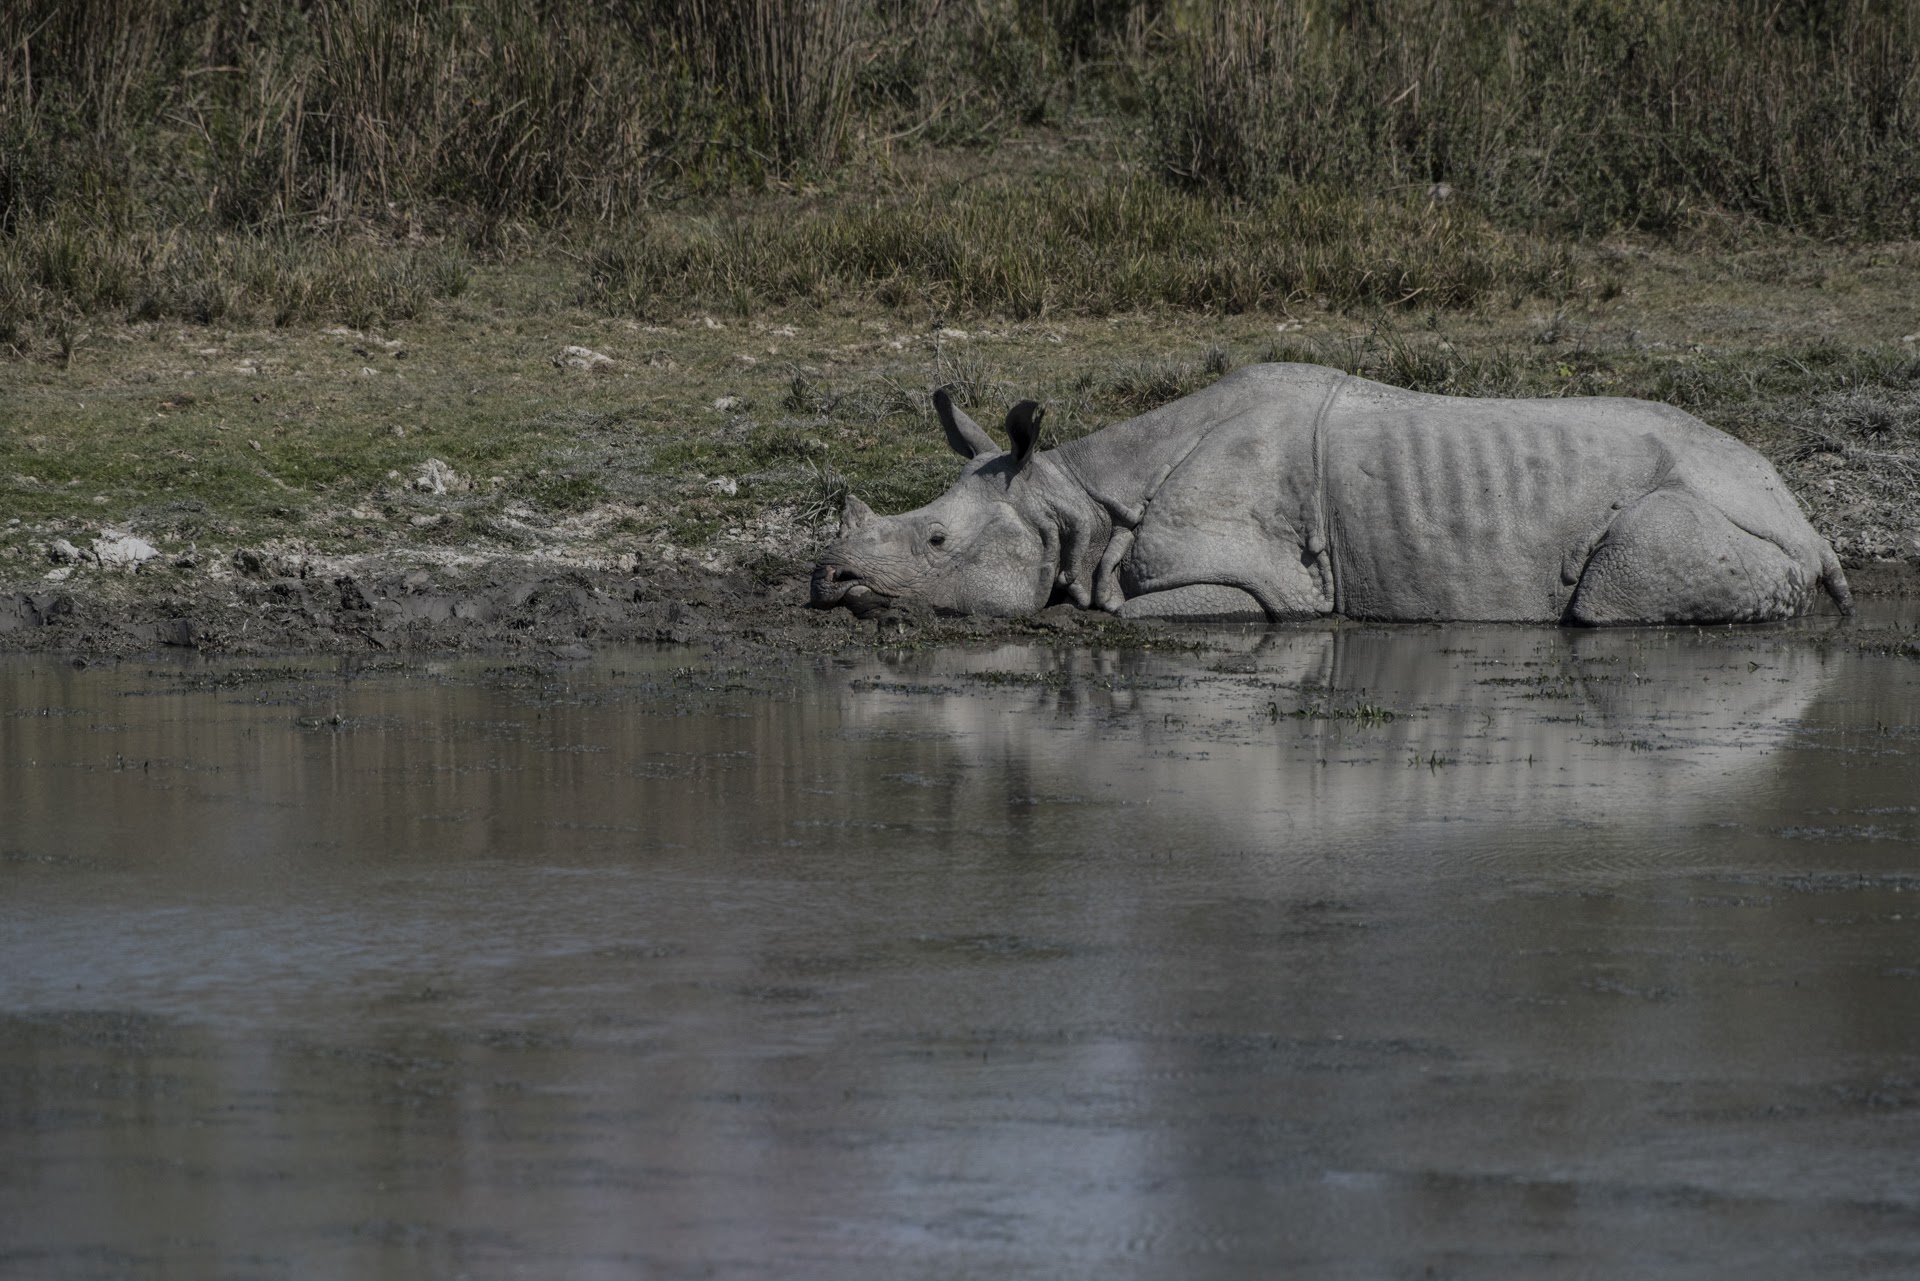 Rhino in the water - Kaziranga